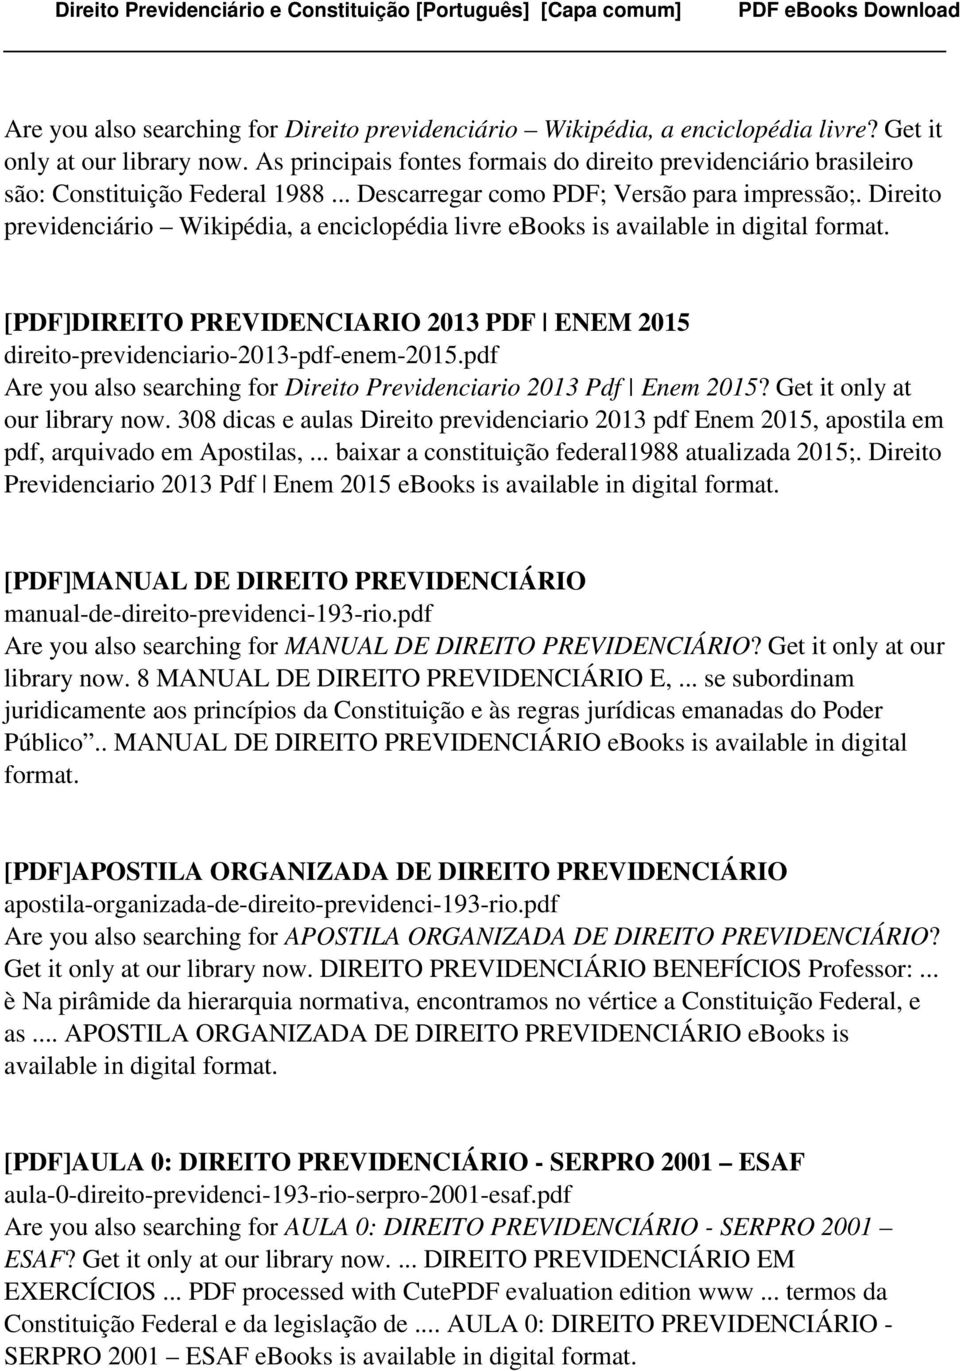 Direito previdenciário Wikipédia, a enciclopédia livre ebooks is available in digital [PDF]DIREITO PREVIDENCIARIO 2013 PDF ENEM 2015 direito-previdenciario-2013-pdf-enem-2015.